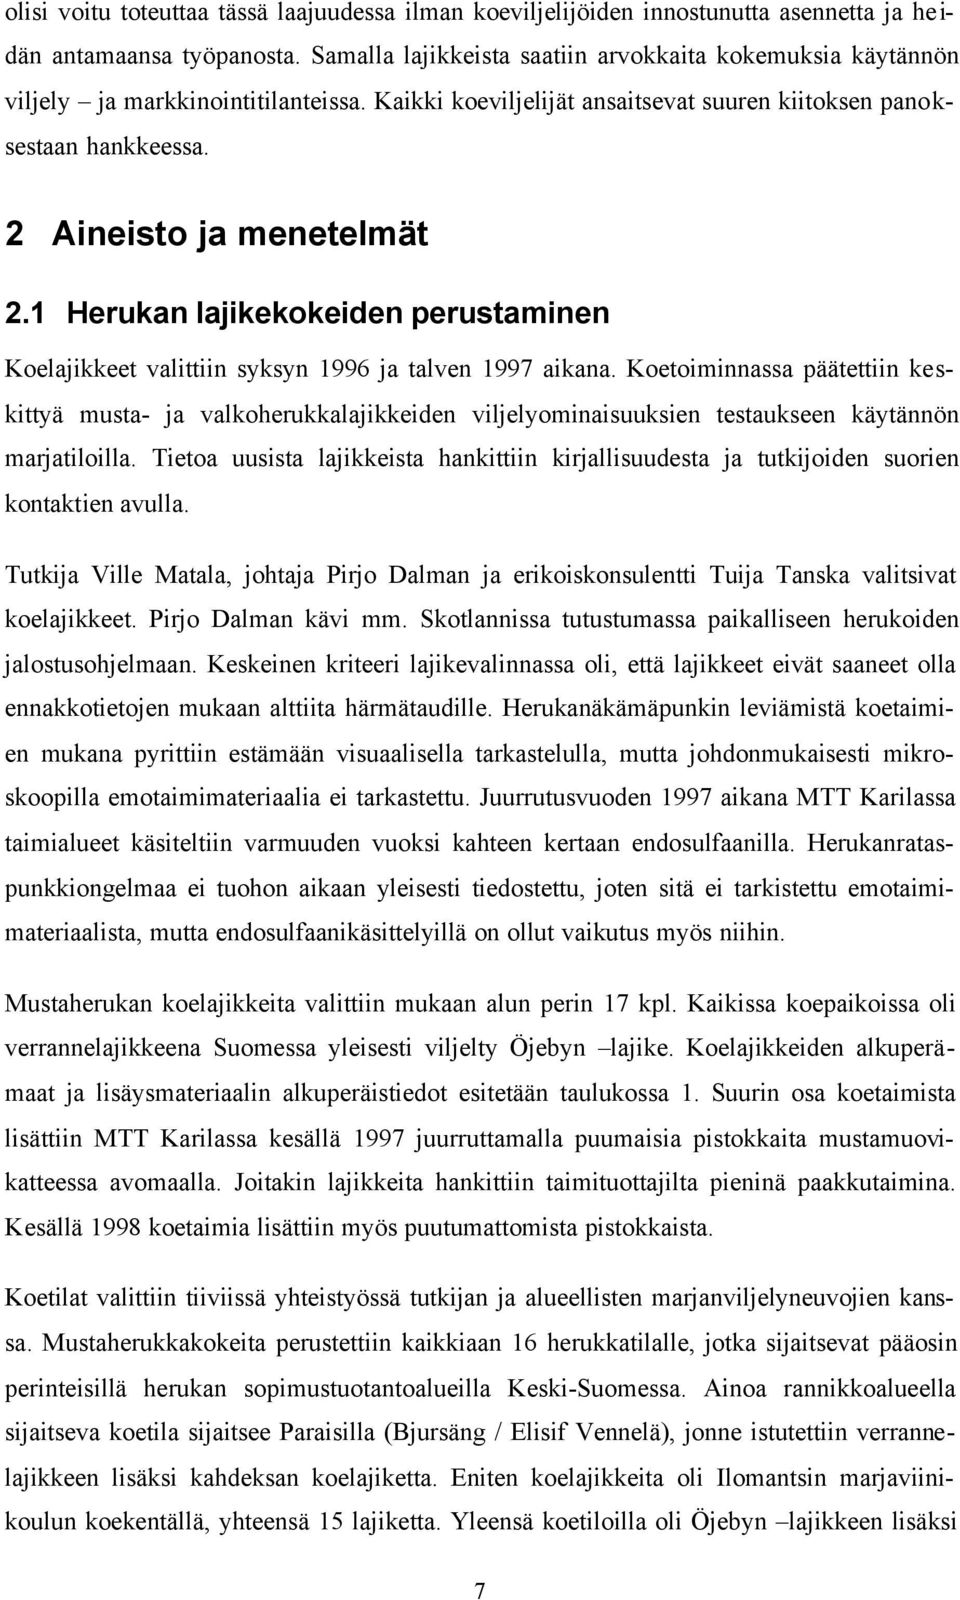 1 Herukan lajikekokeiden perustaminen Koelajikkeet valittiin syksyn 1996 ja talven 1997 aikana.